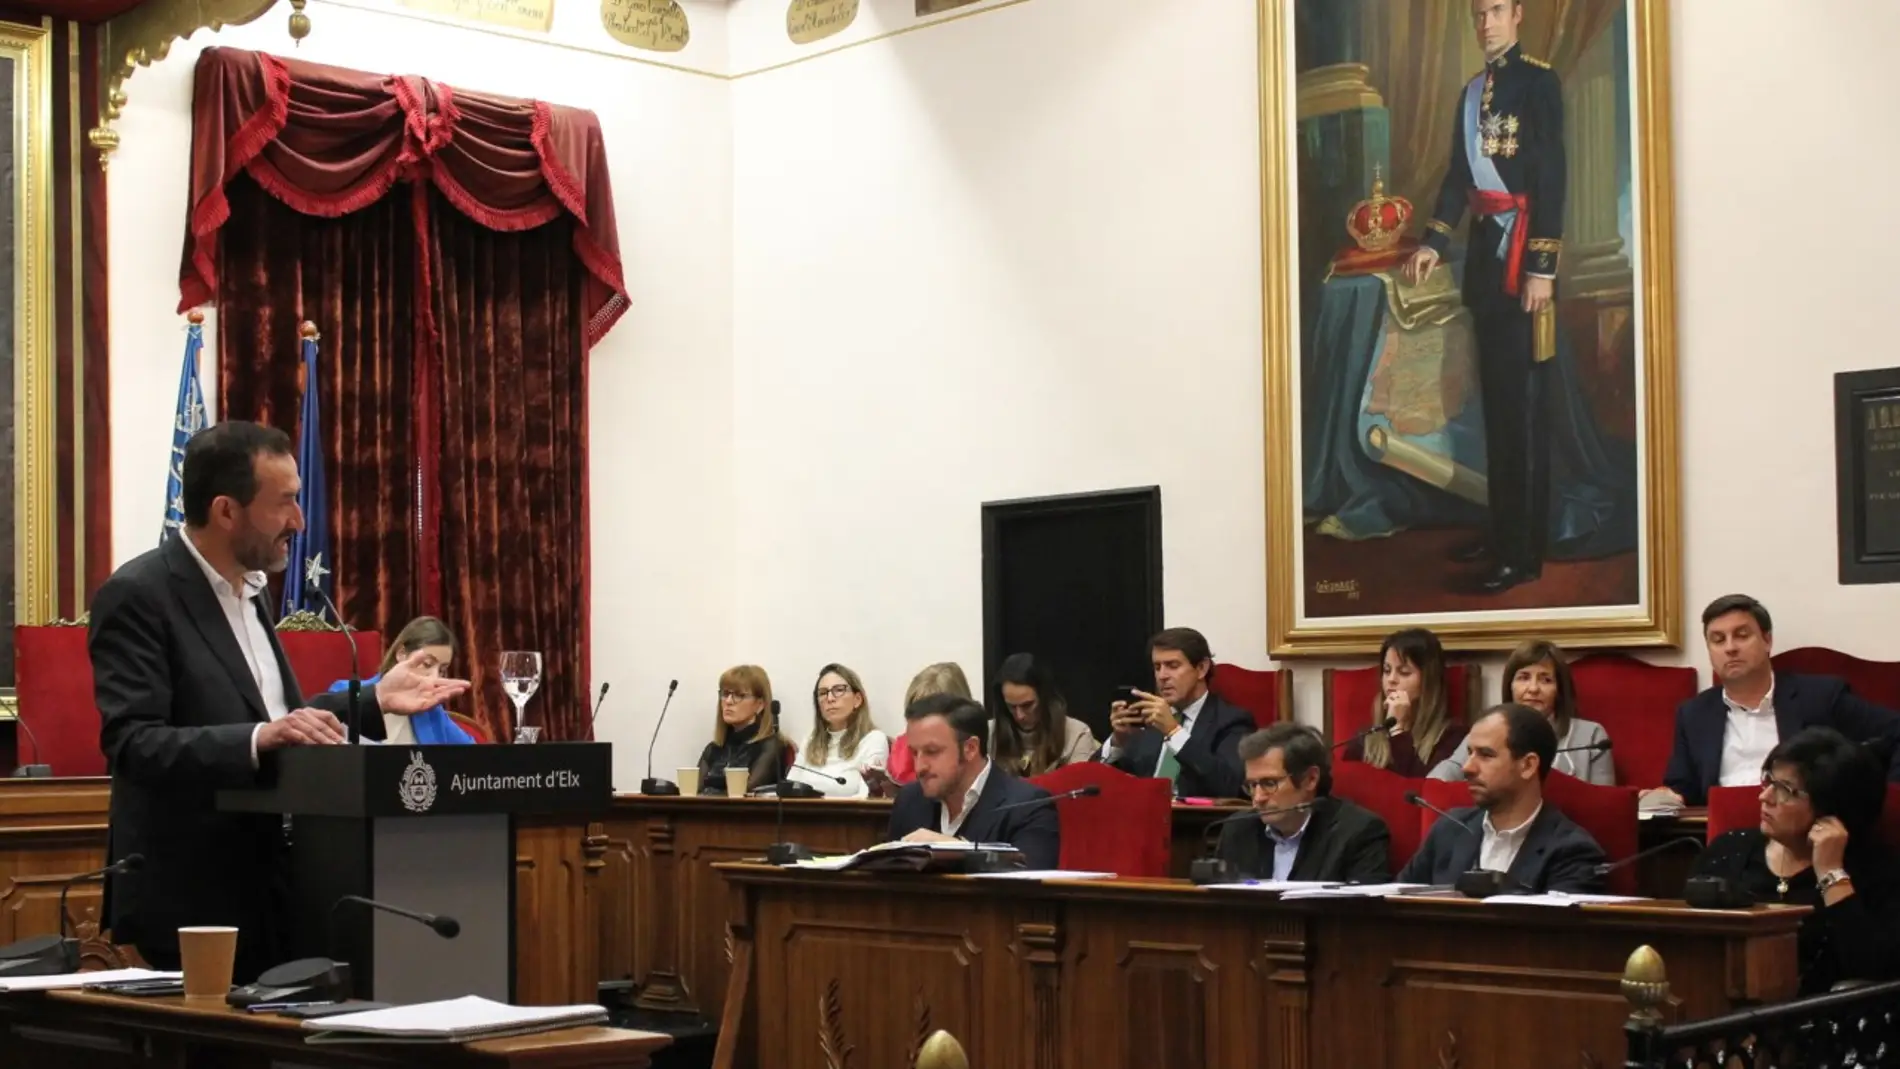 Intervención del alcalde de Elche en el Debate sobre el estado del municipio en 2019.